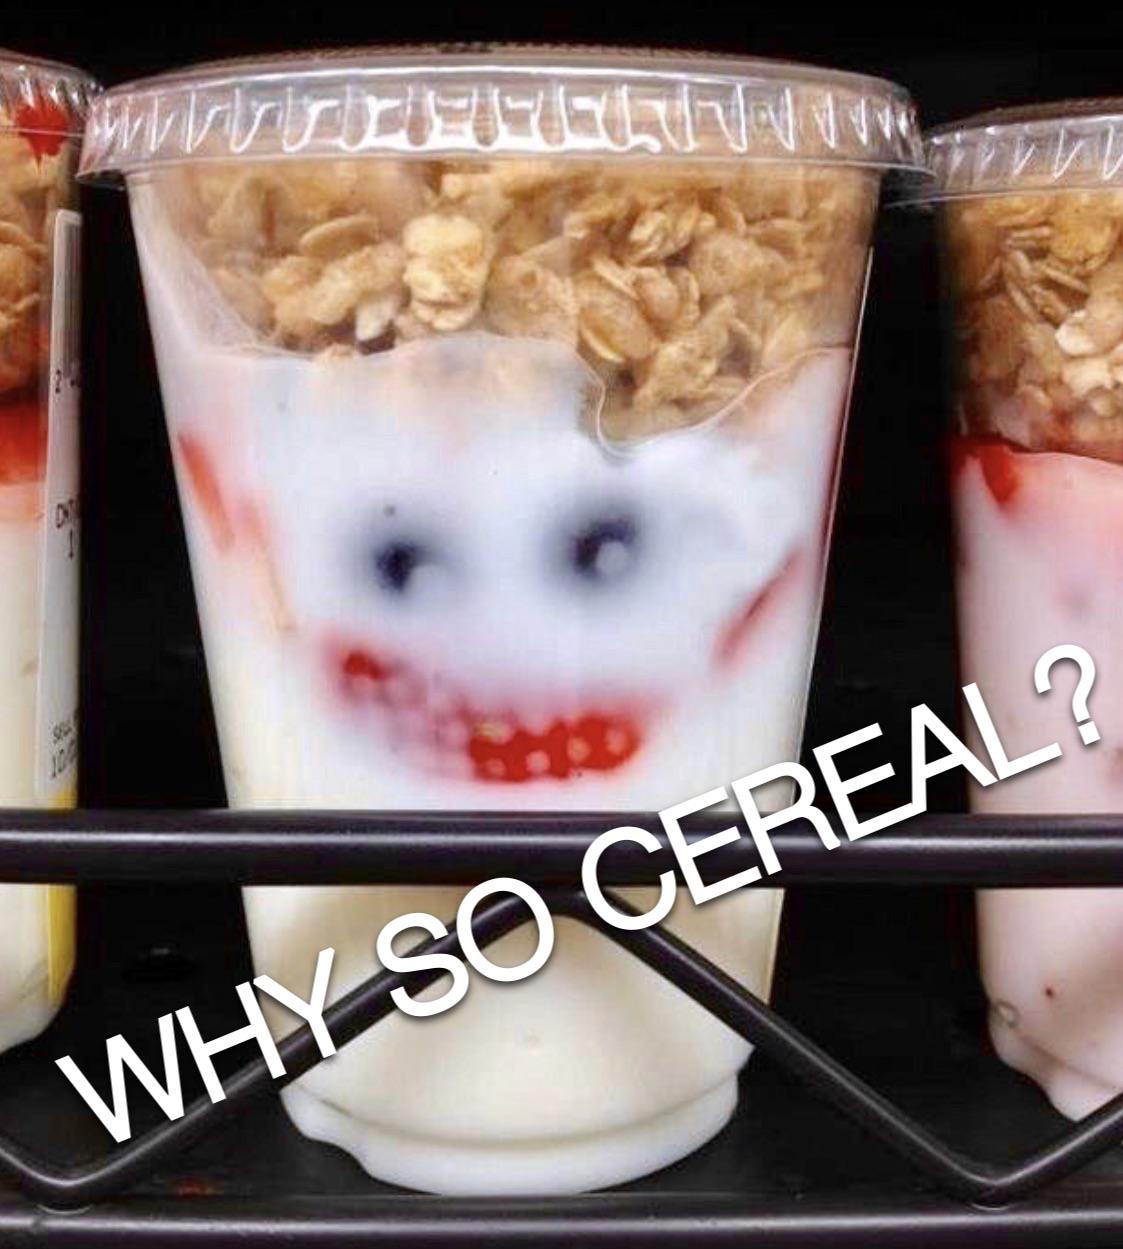 funny joker meme - N 100 Why So Cereal?